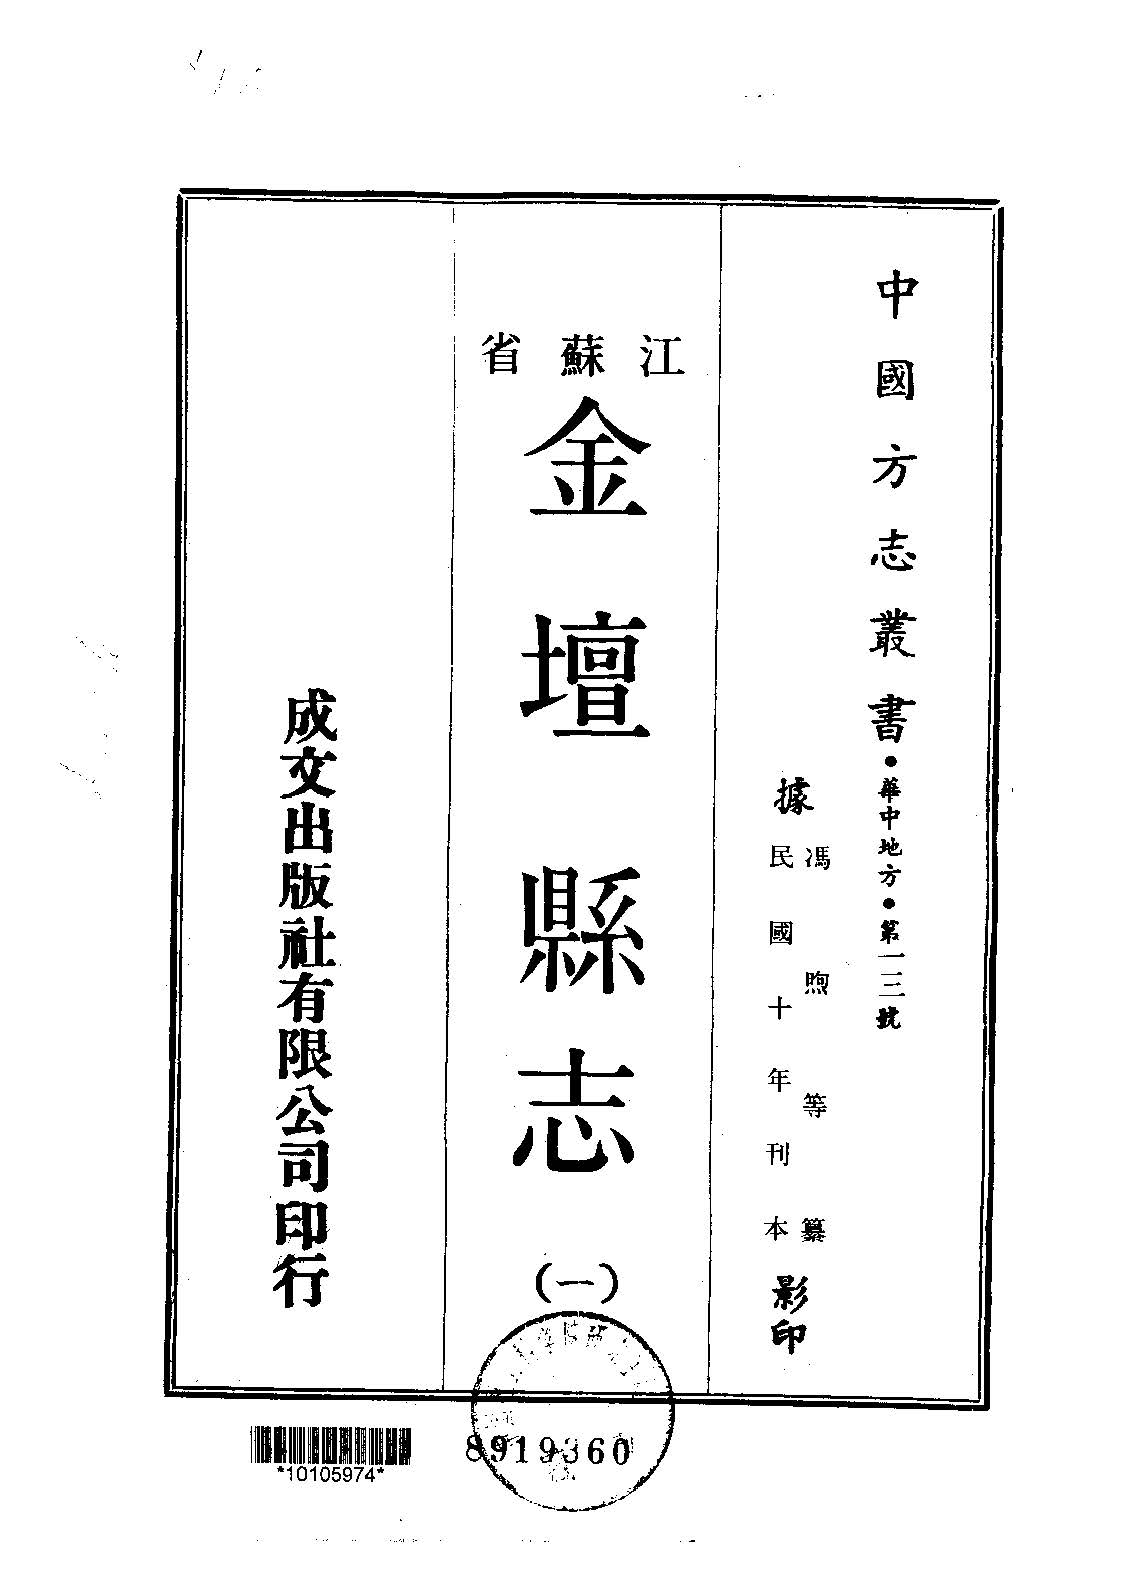 金坛县志的书籍封面